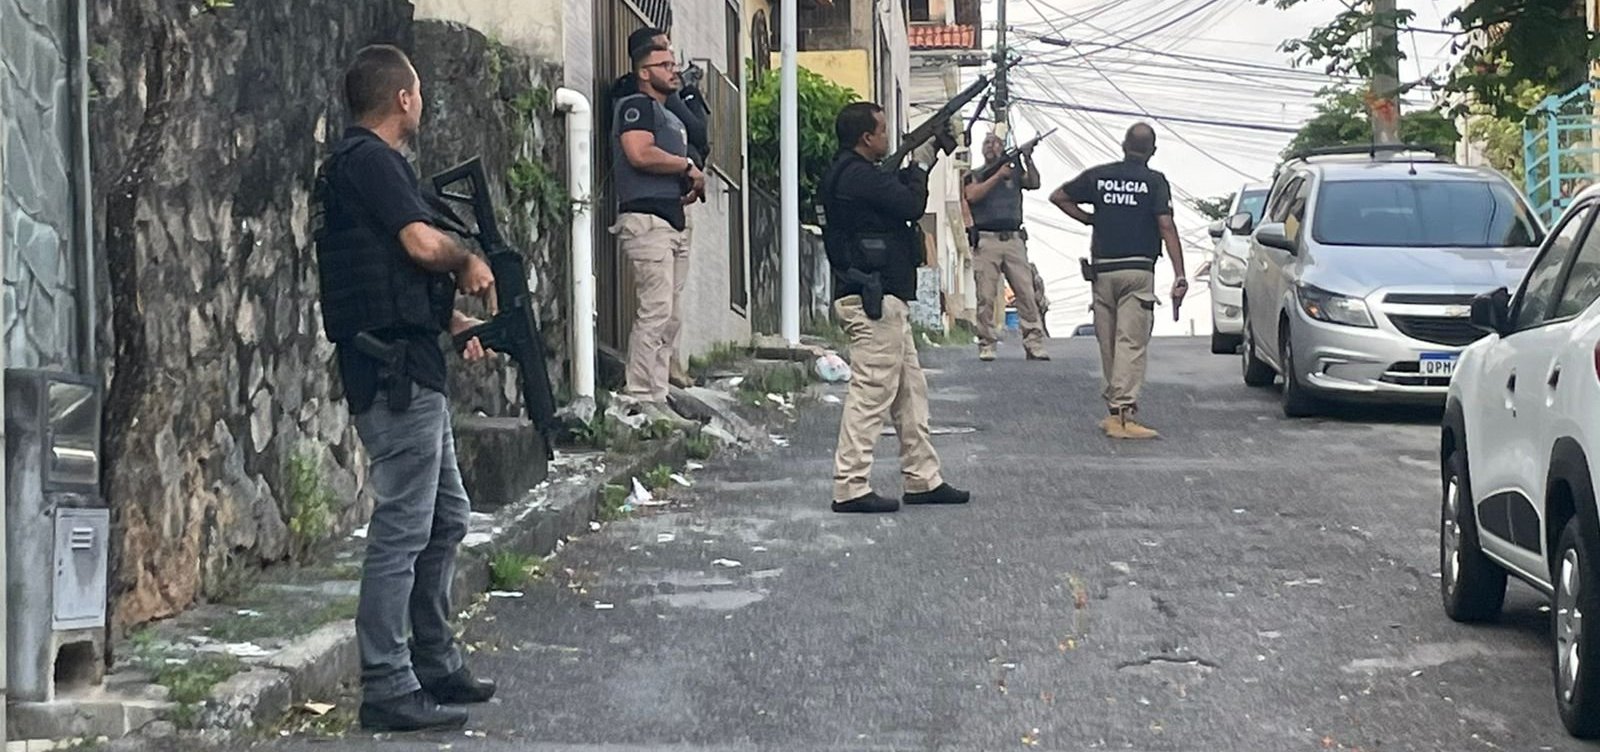 Funcionário do sistema prisional é detido em operação contra extorsão, sequestro e cárcere na Bahia